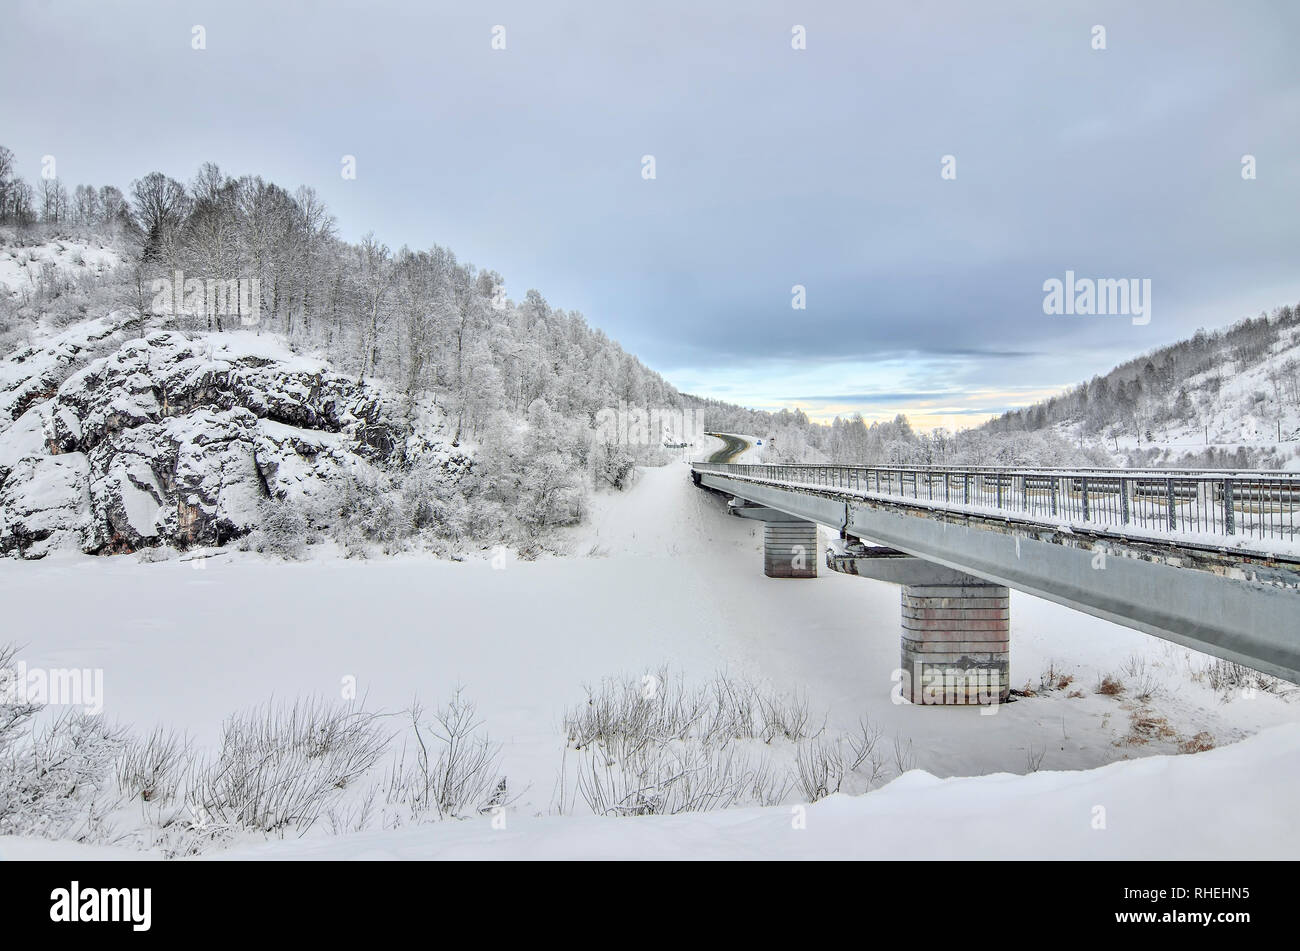 Autostrada con ponte attraverso le scogliere innevate in montagna - inverno bellissimo paesaggio al crepuscolo. La betulla e la foresta di pini sulle pendici delle colline con hoa Foto Stock